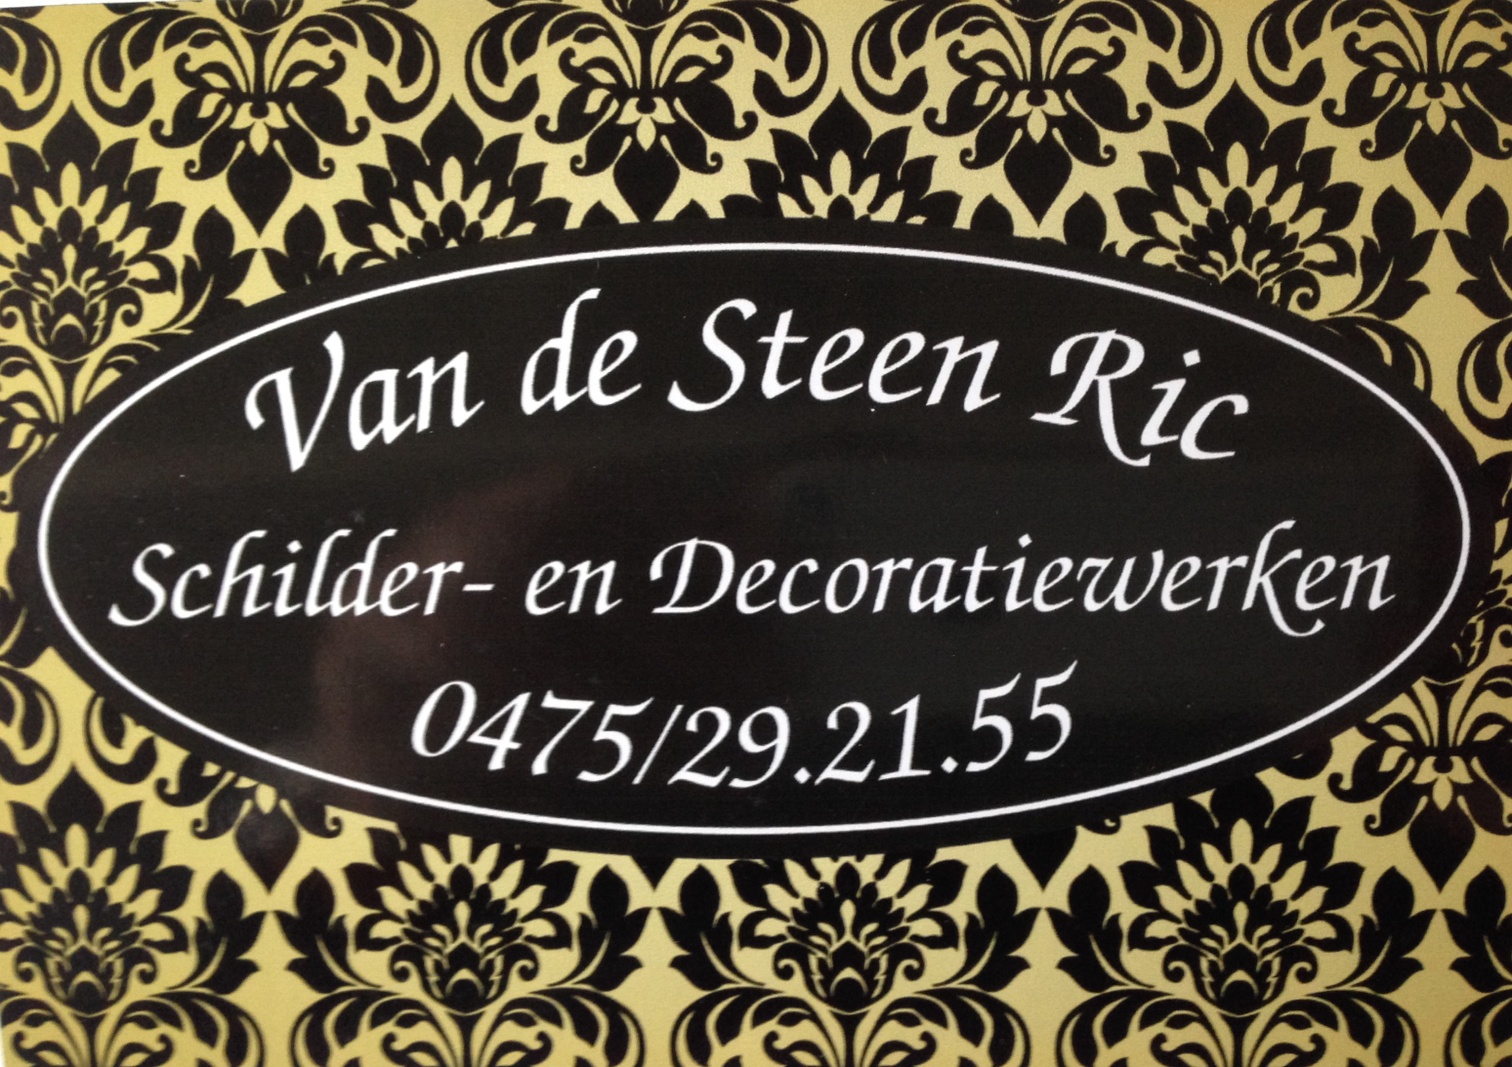 Van de Steen Ric logo